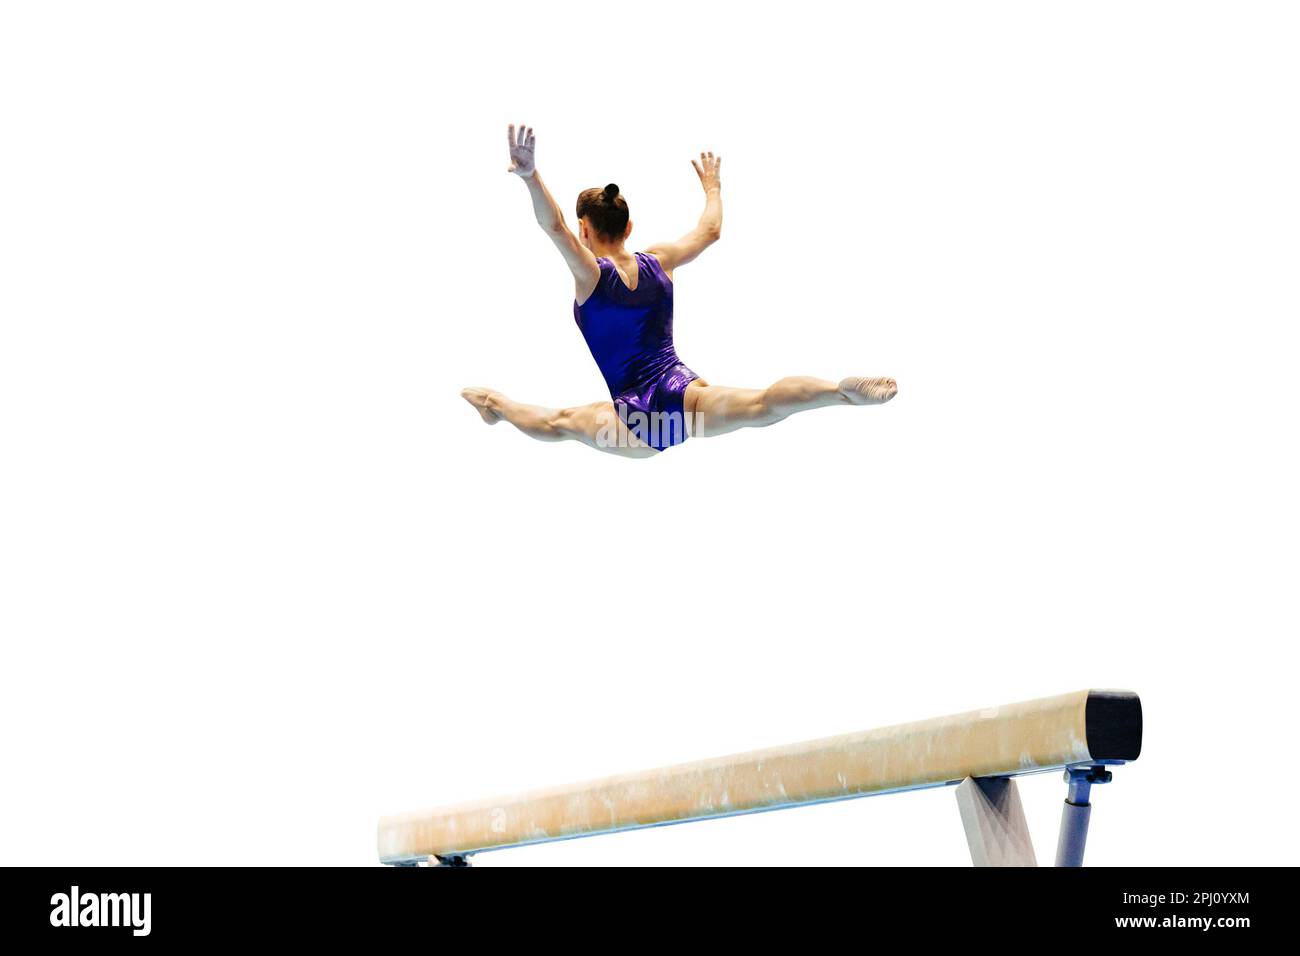 gimnasta de mujer ejercicio split salto en gimnasia de haz de equilibrio, deportes en juegos de verano Foto de stock